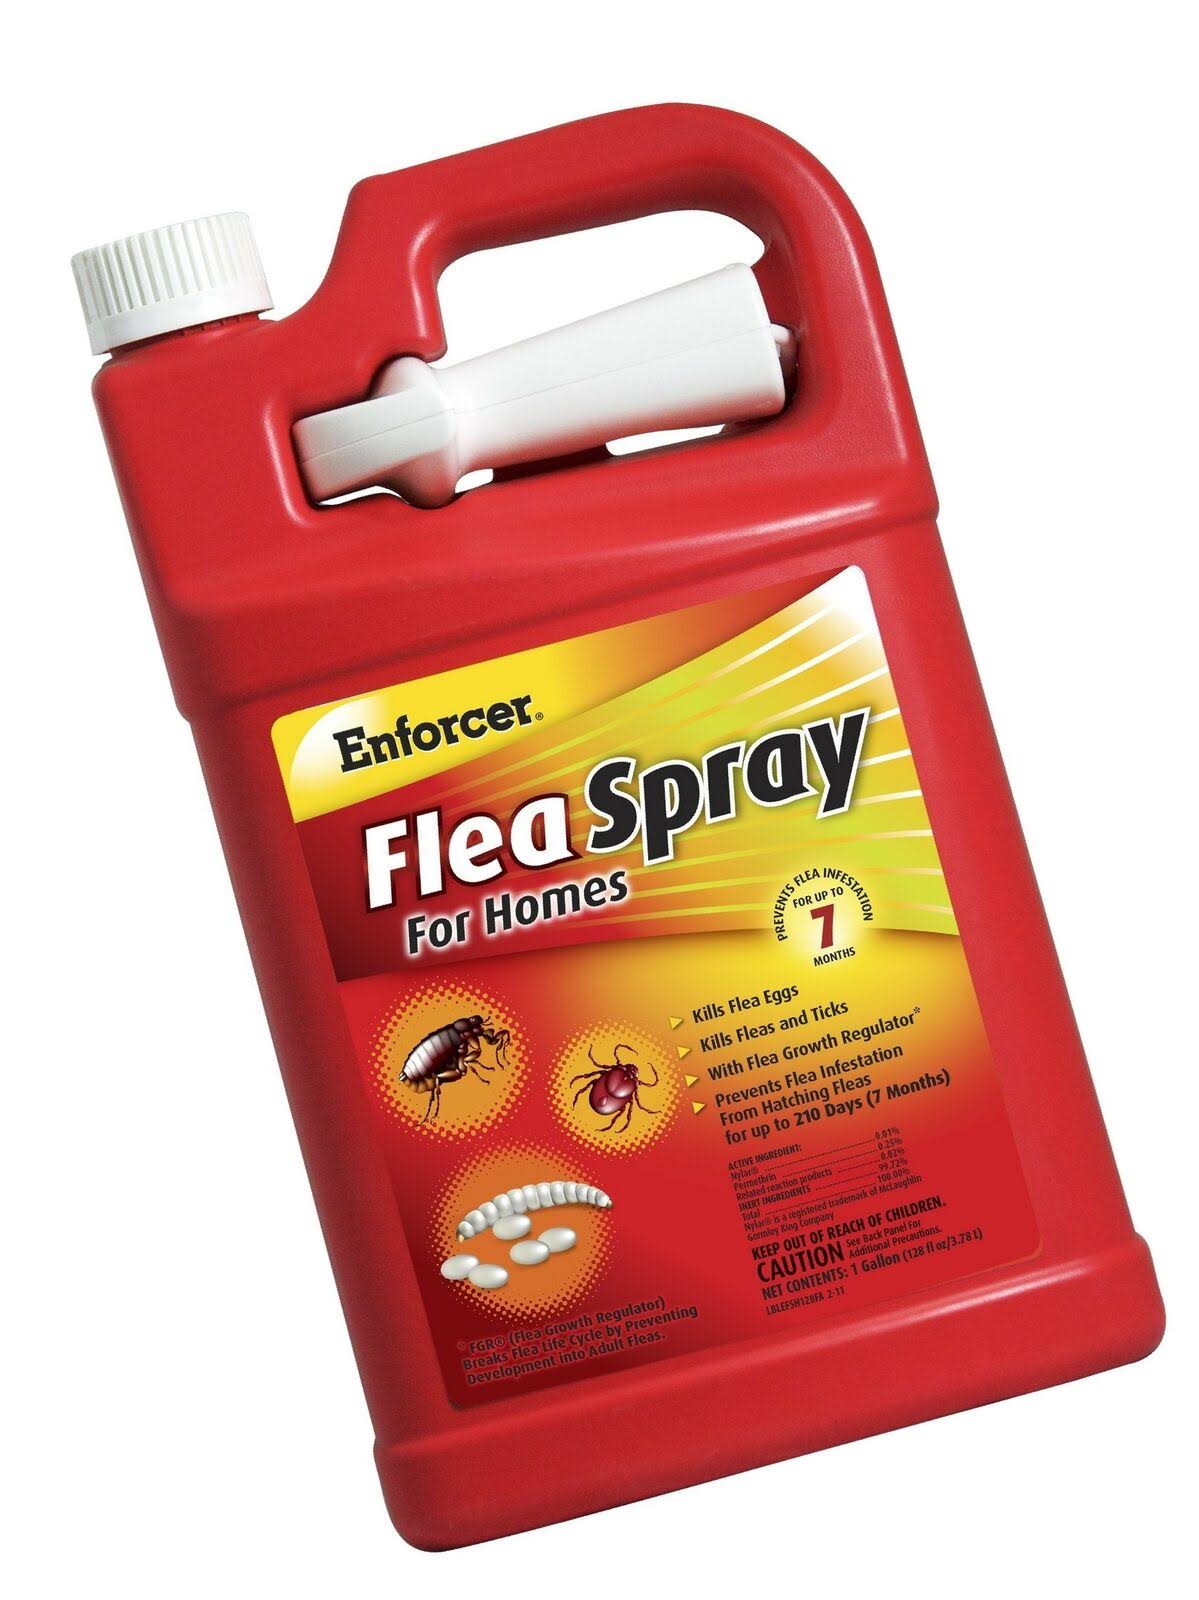 Enforcer Flea Spray for Homes - 1 Gallon, Fresh Linen Scent